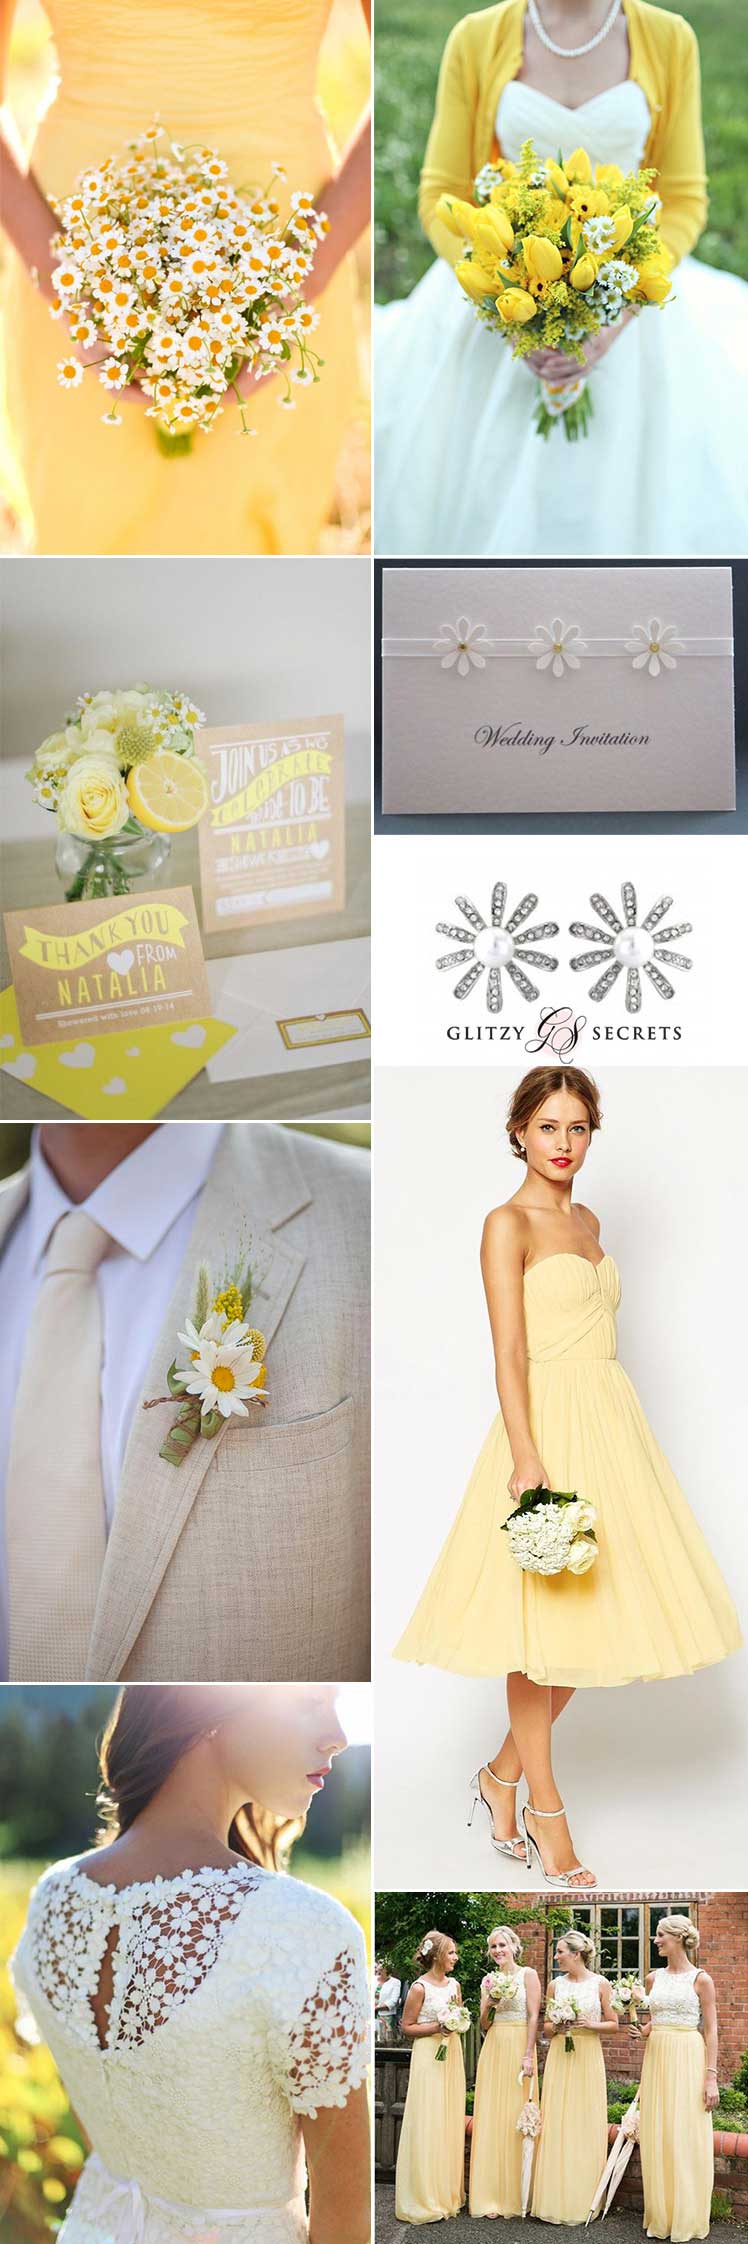 Daisy theme wedding ideas